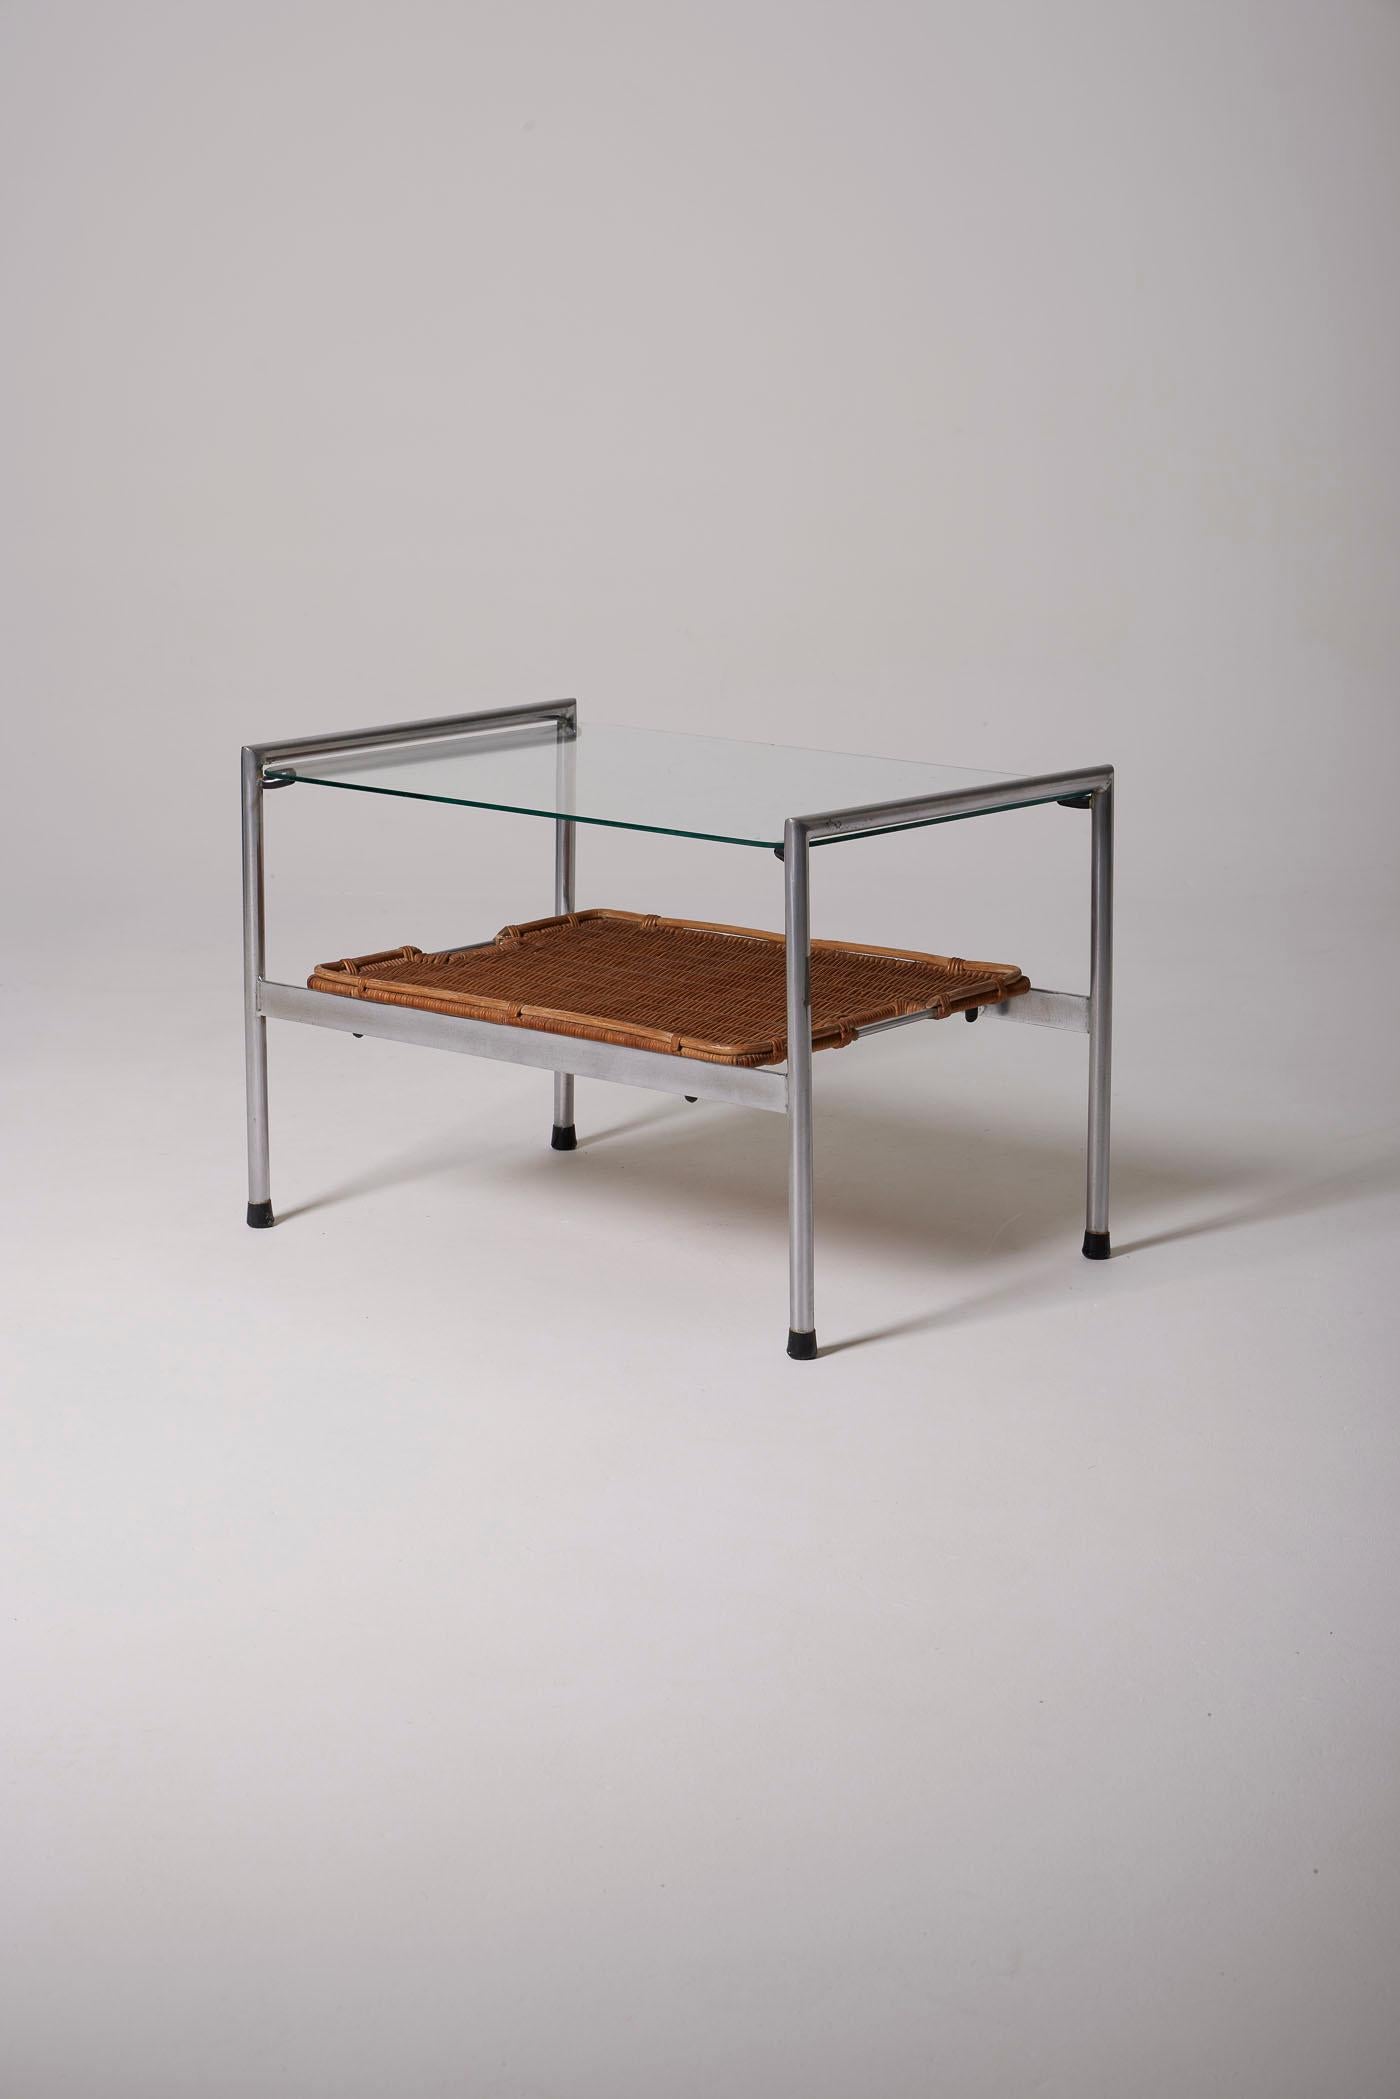 Table basse ou table d'appoint du designer néerlandais Dirk Van Sliedregt, des années 1950. Il se compose d'un plateau en verre, d'un plateau amovible en rotin tressé et d'une base en acier brossé. En très bon état.
DV428